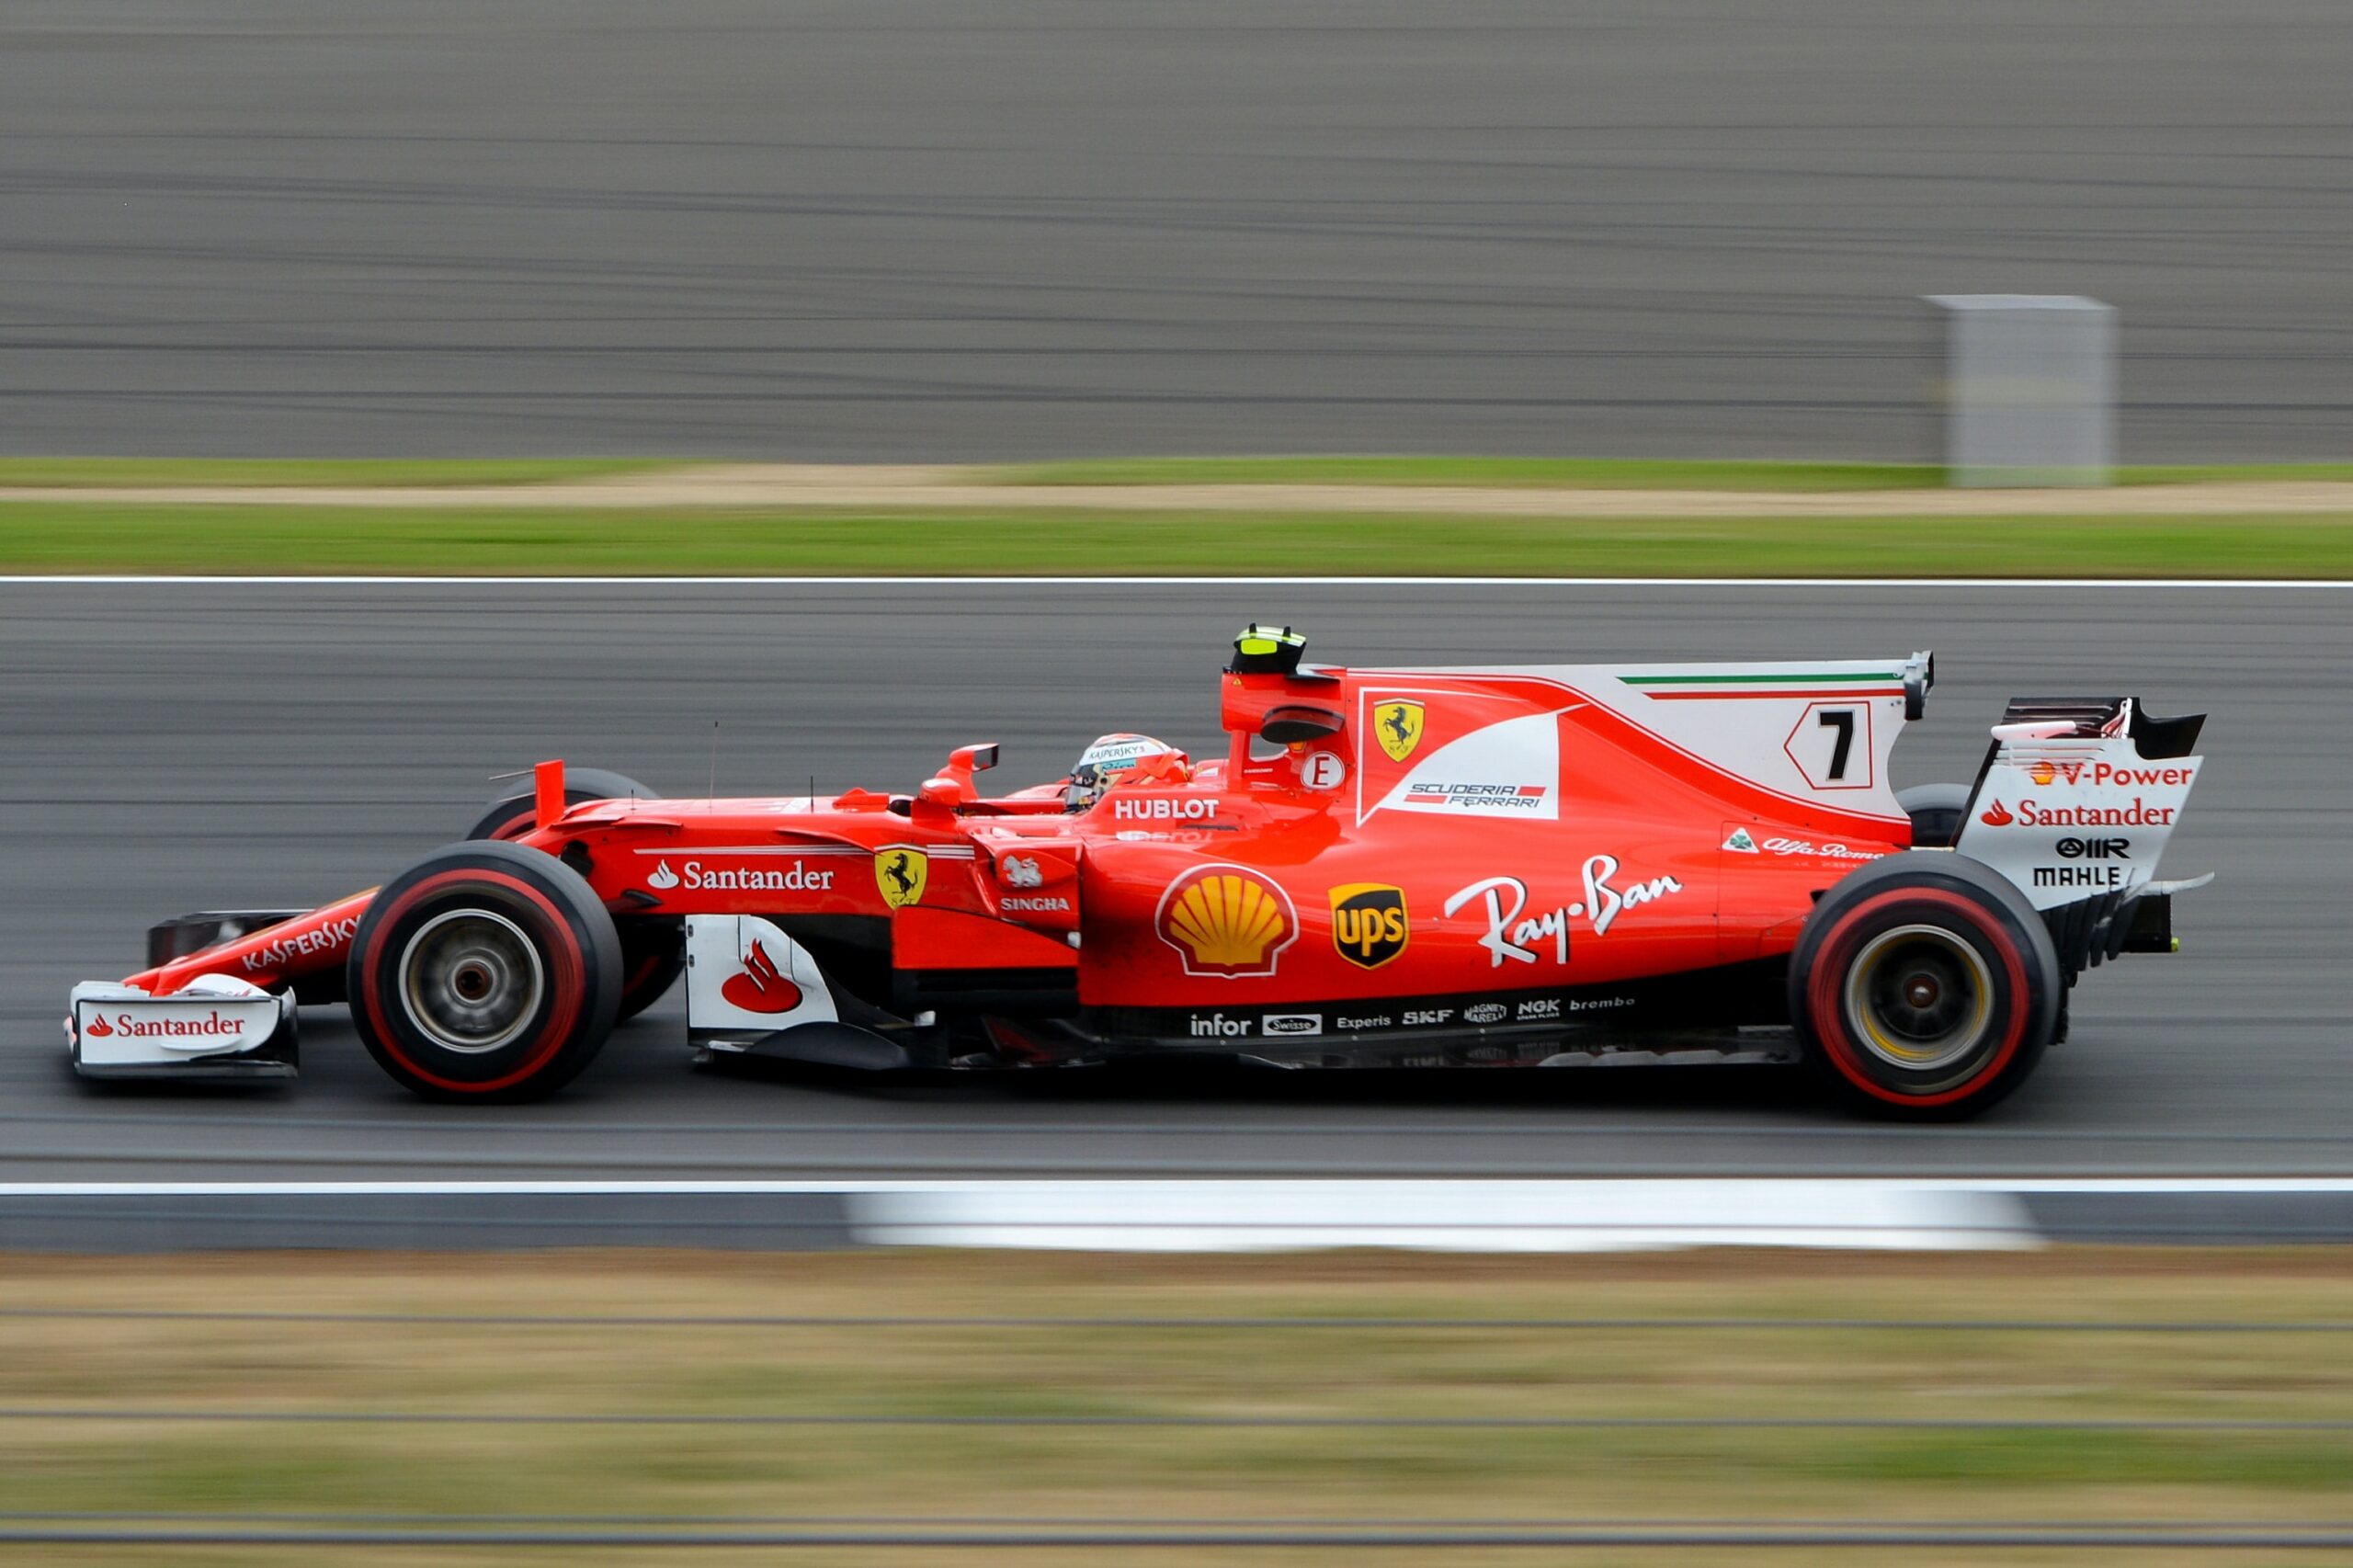 Grand Prix F1 car